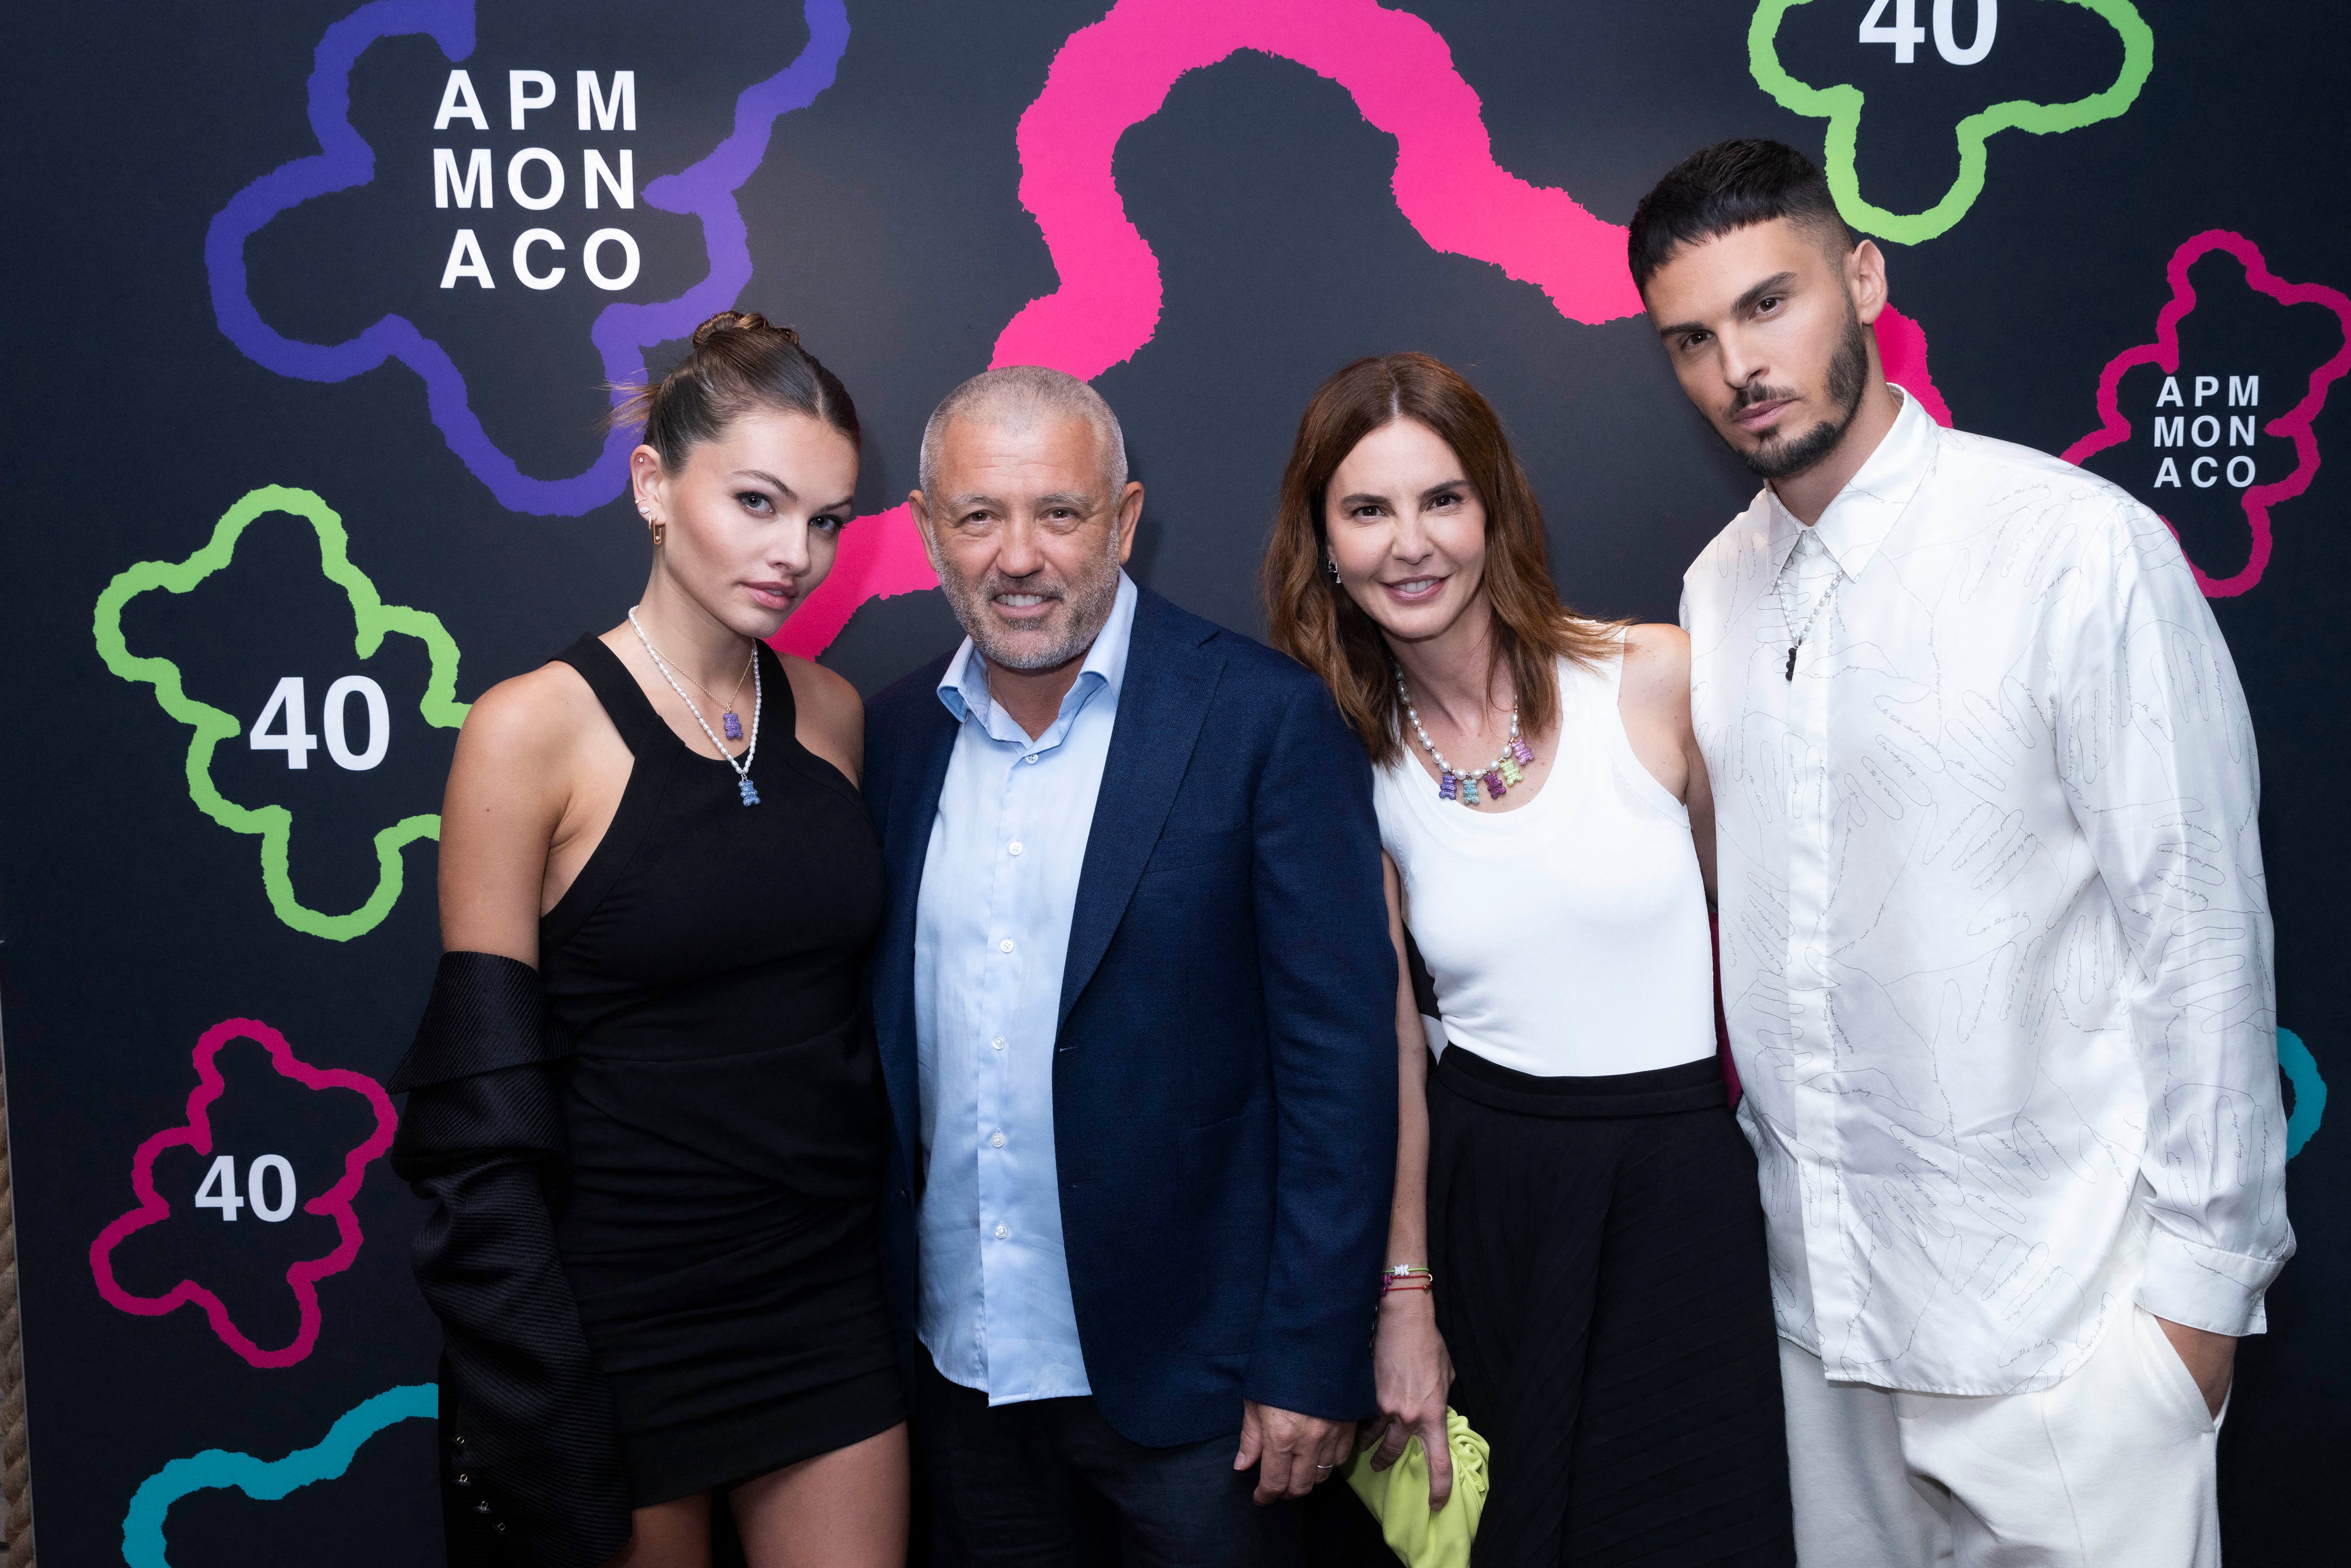 Thylane Blondeau, Philippe Prette, Kika Prette, Baptiste Giabiconi  for APM Monaco 40th anniversary